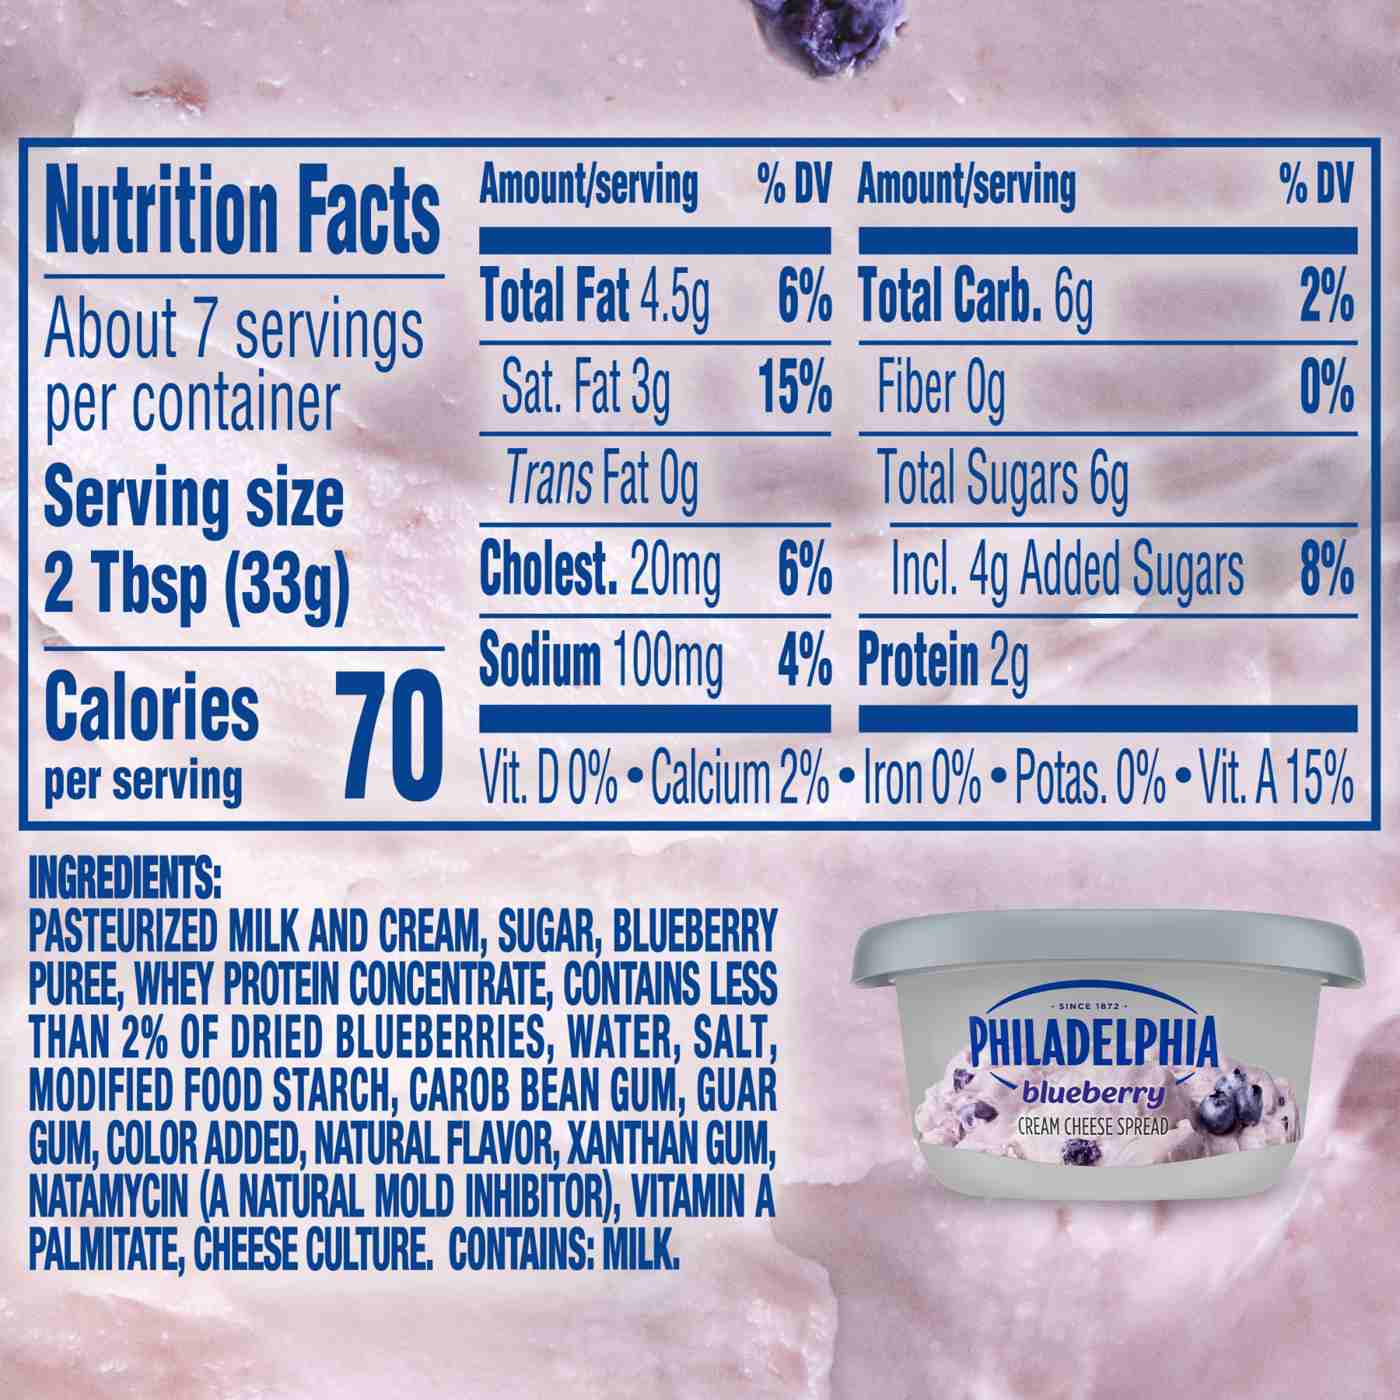 Philadelphia Blueberry Cream Cheese Spread; image 7 of 9